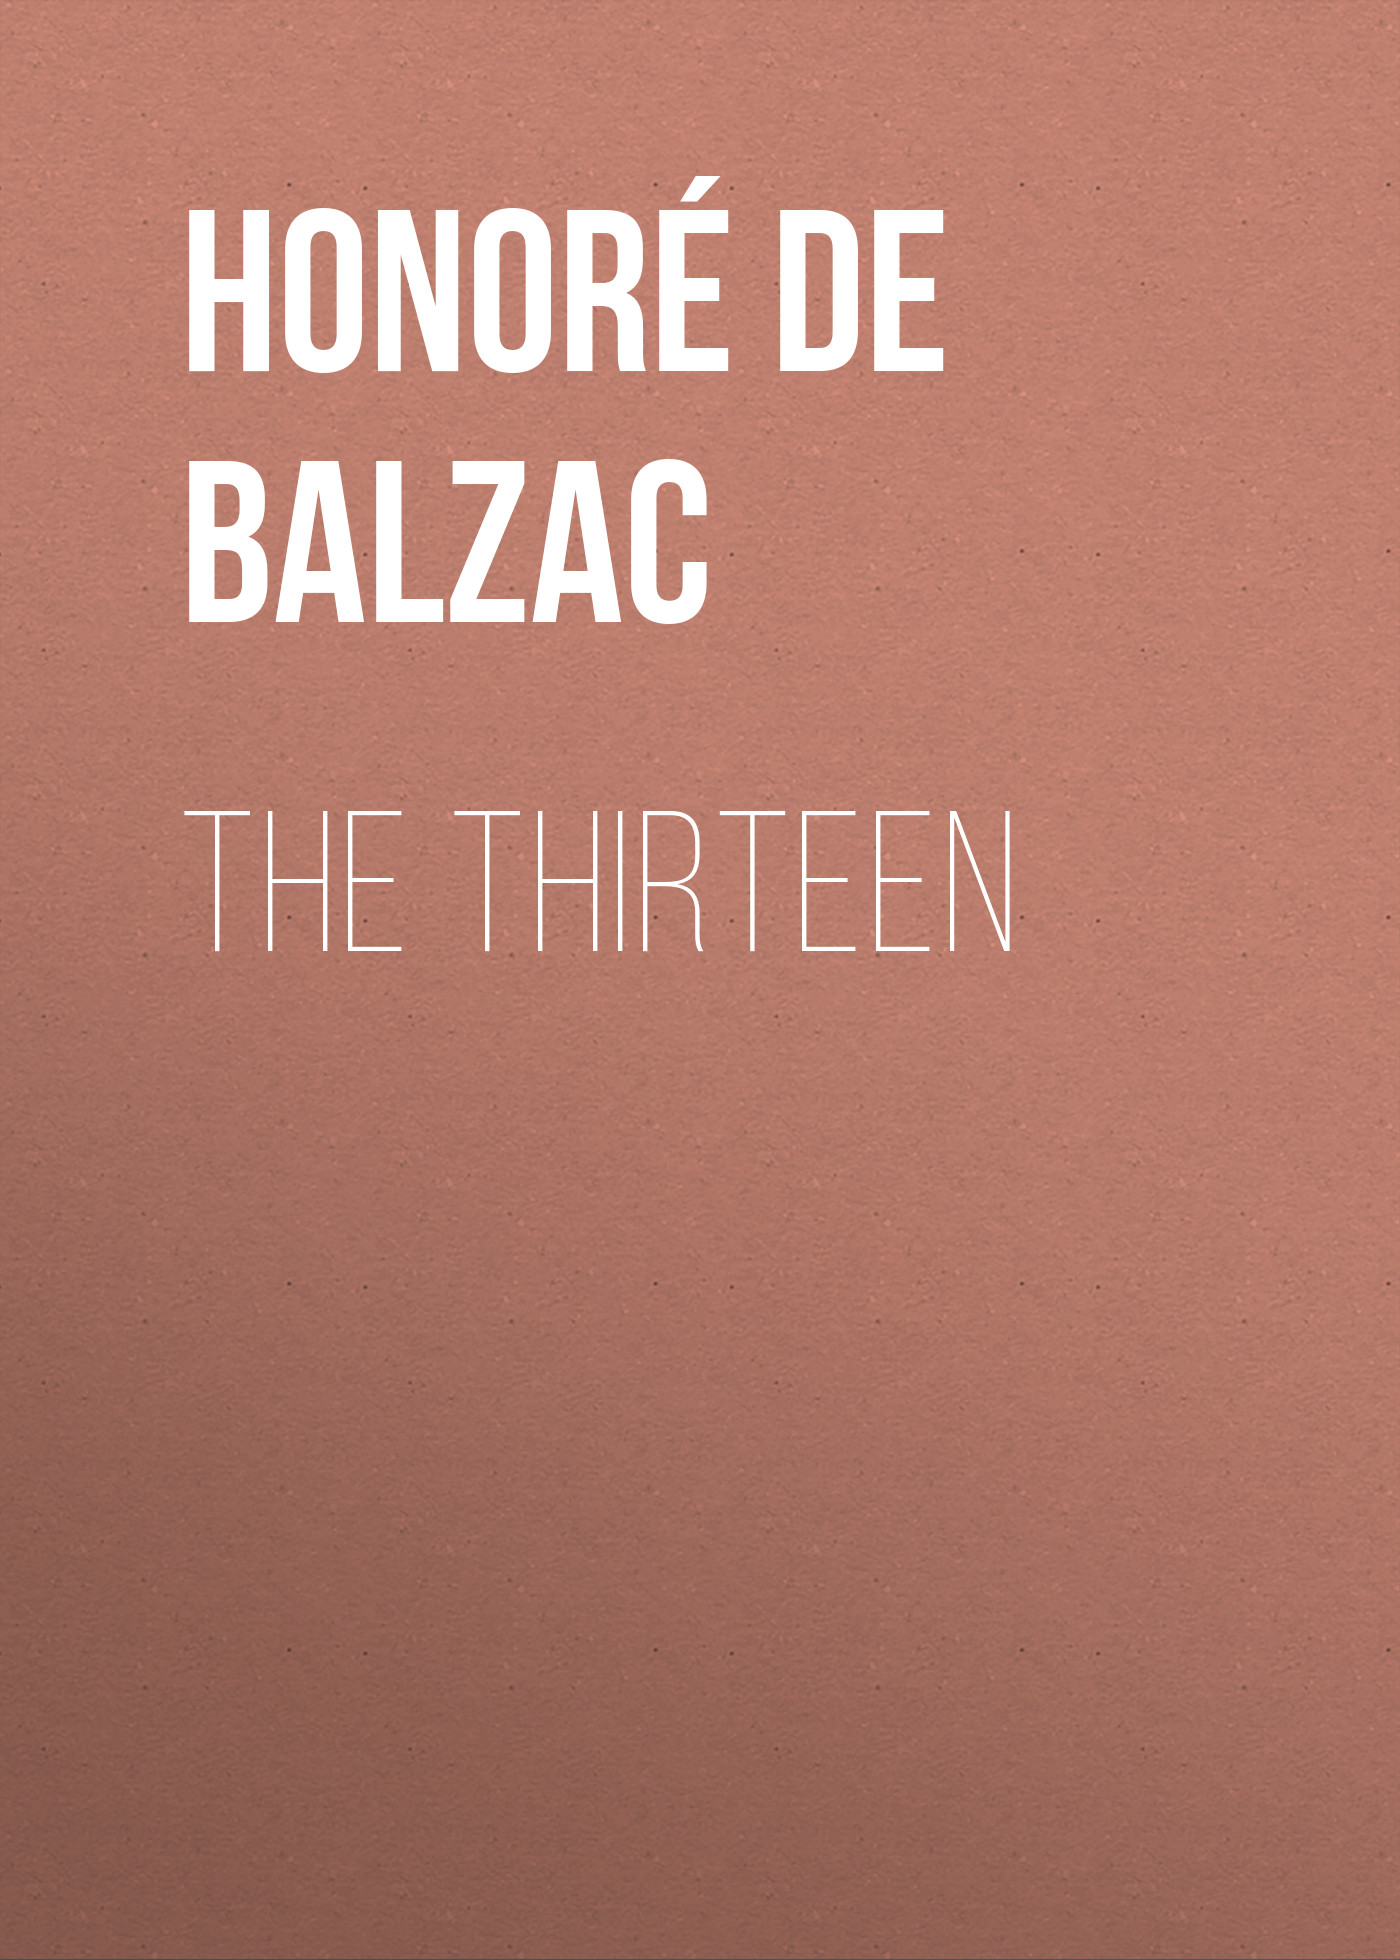 Книга The Thirteen из серии , созданная Honoré Balzac, может относится к жанру Литература 19 века, Зарубежная старинная литература, Зарубежная классика. Стоимость электронной книги The Thirteen с идентификатором 25020715 составляет 0 руб.